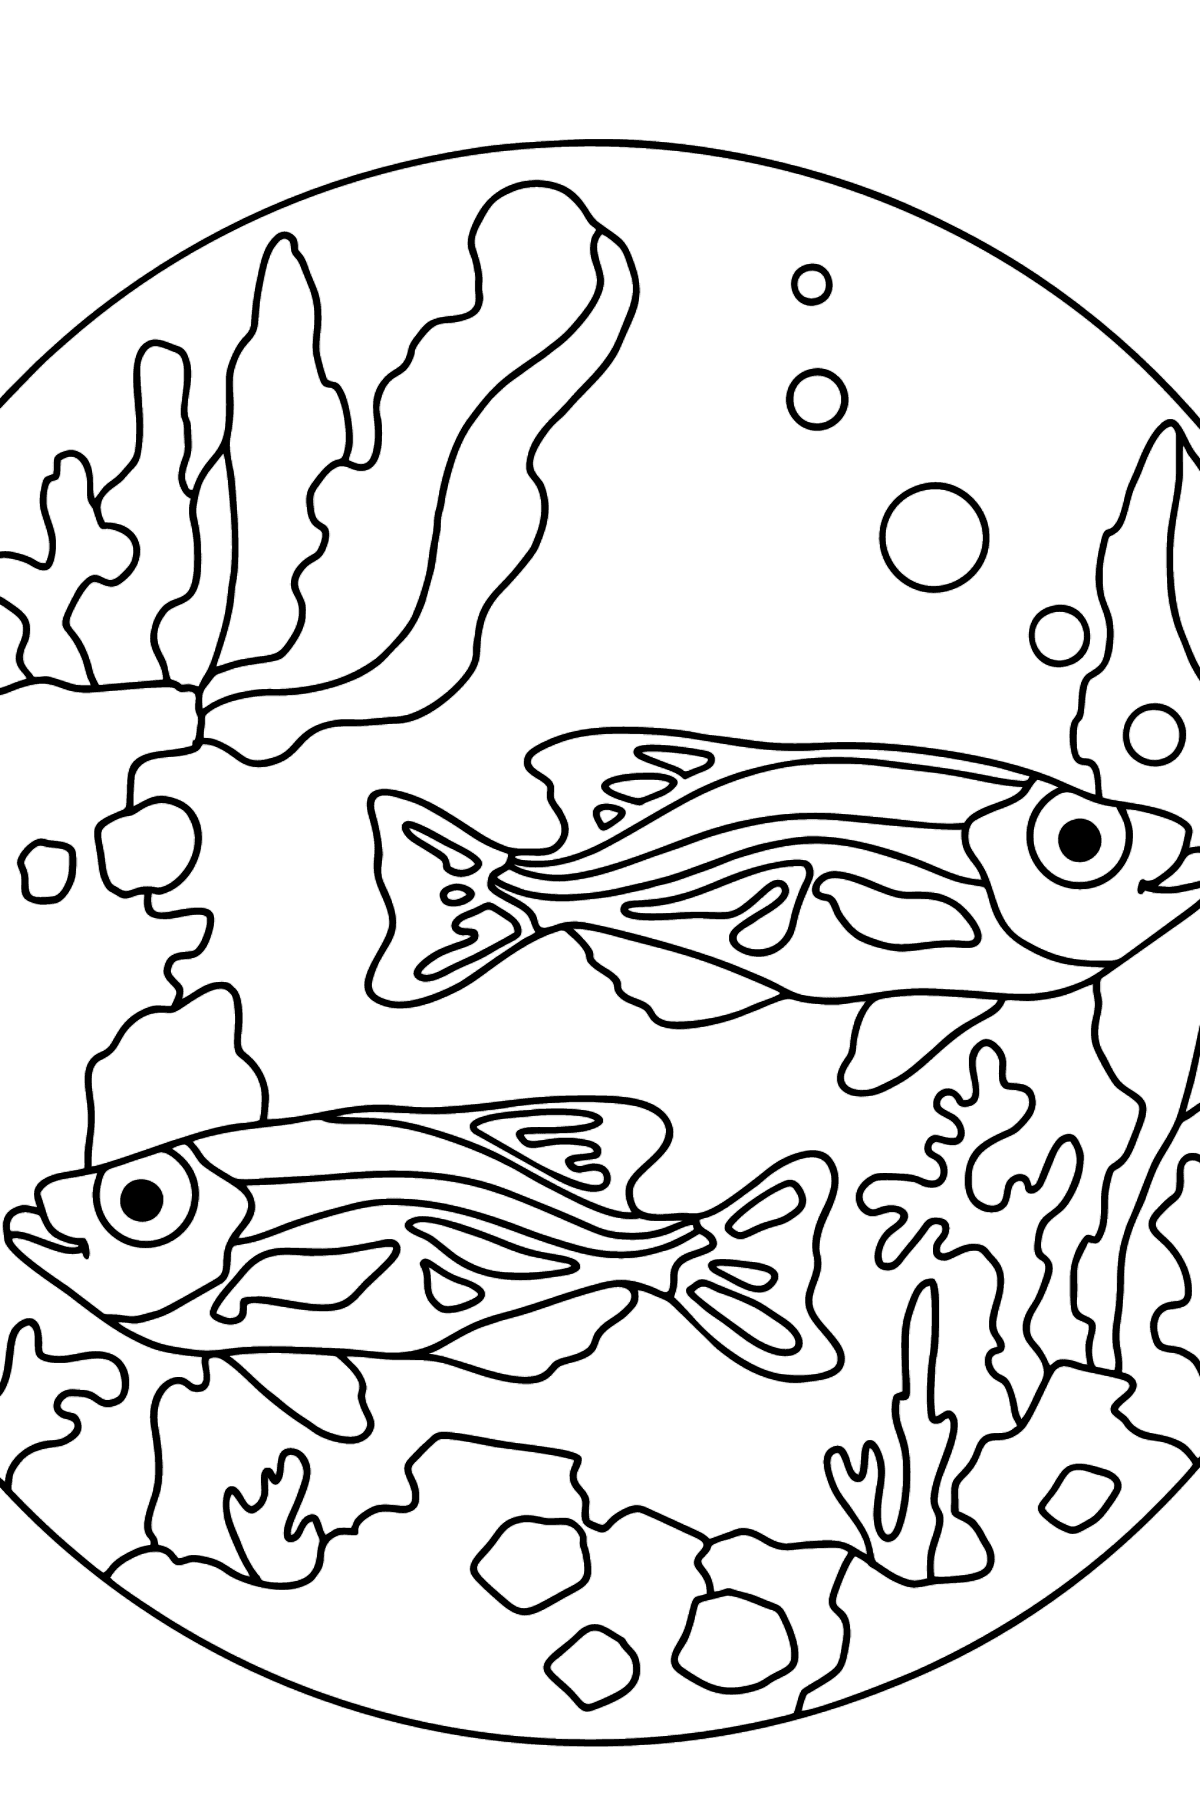 Coloriage - Les poissons nagent en beauté - Coloriages pour les Enfants